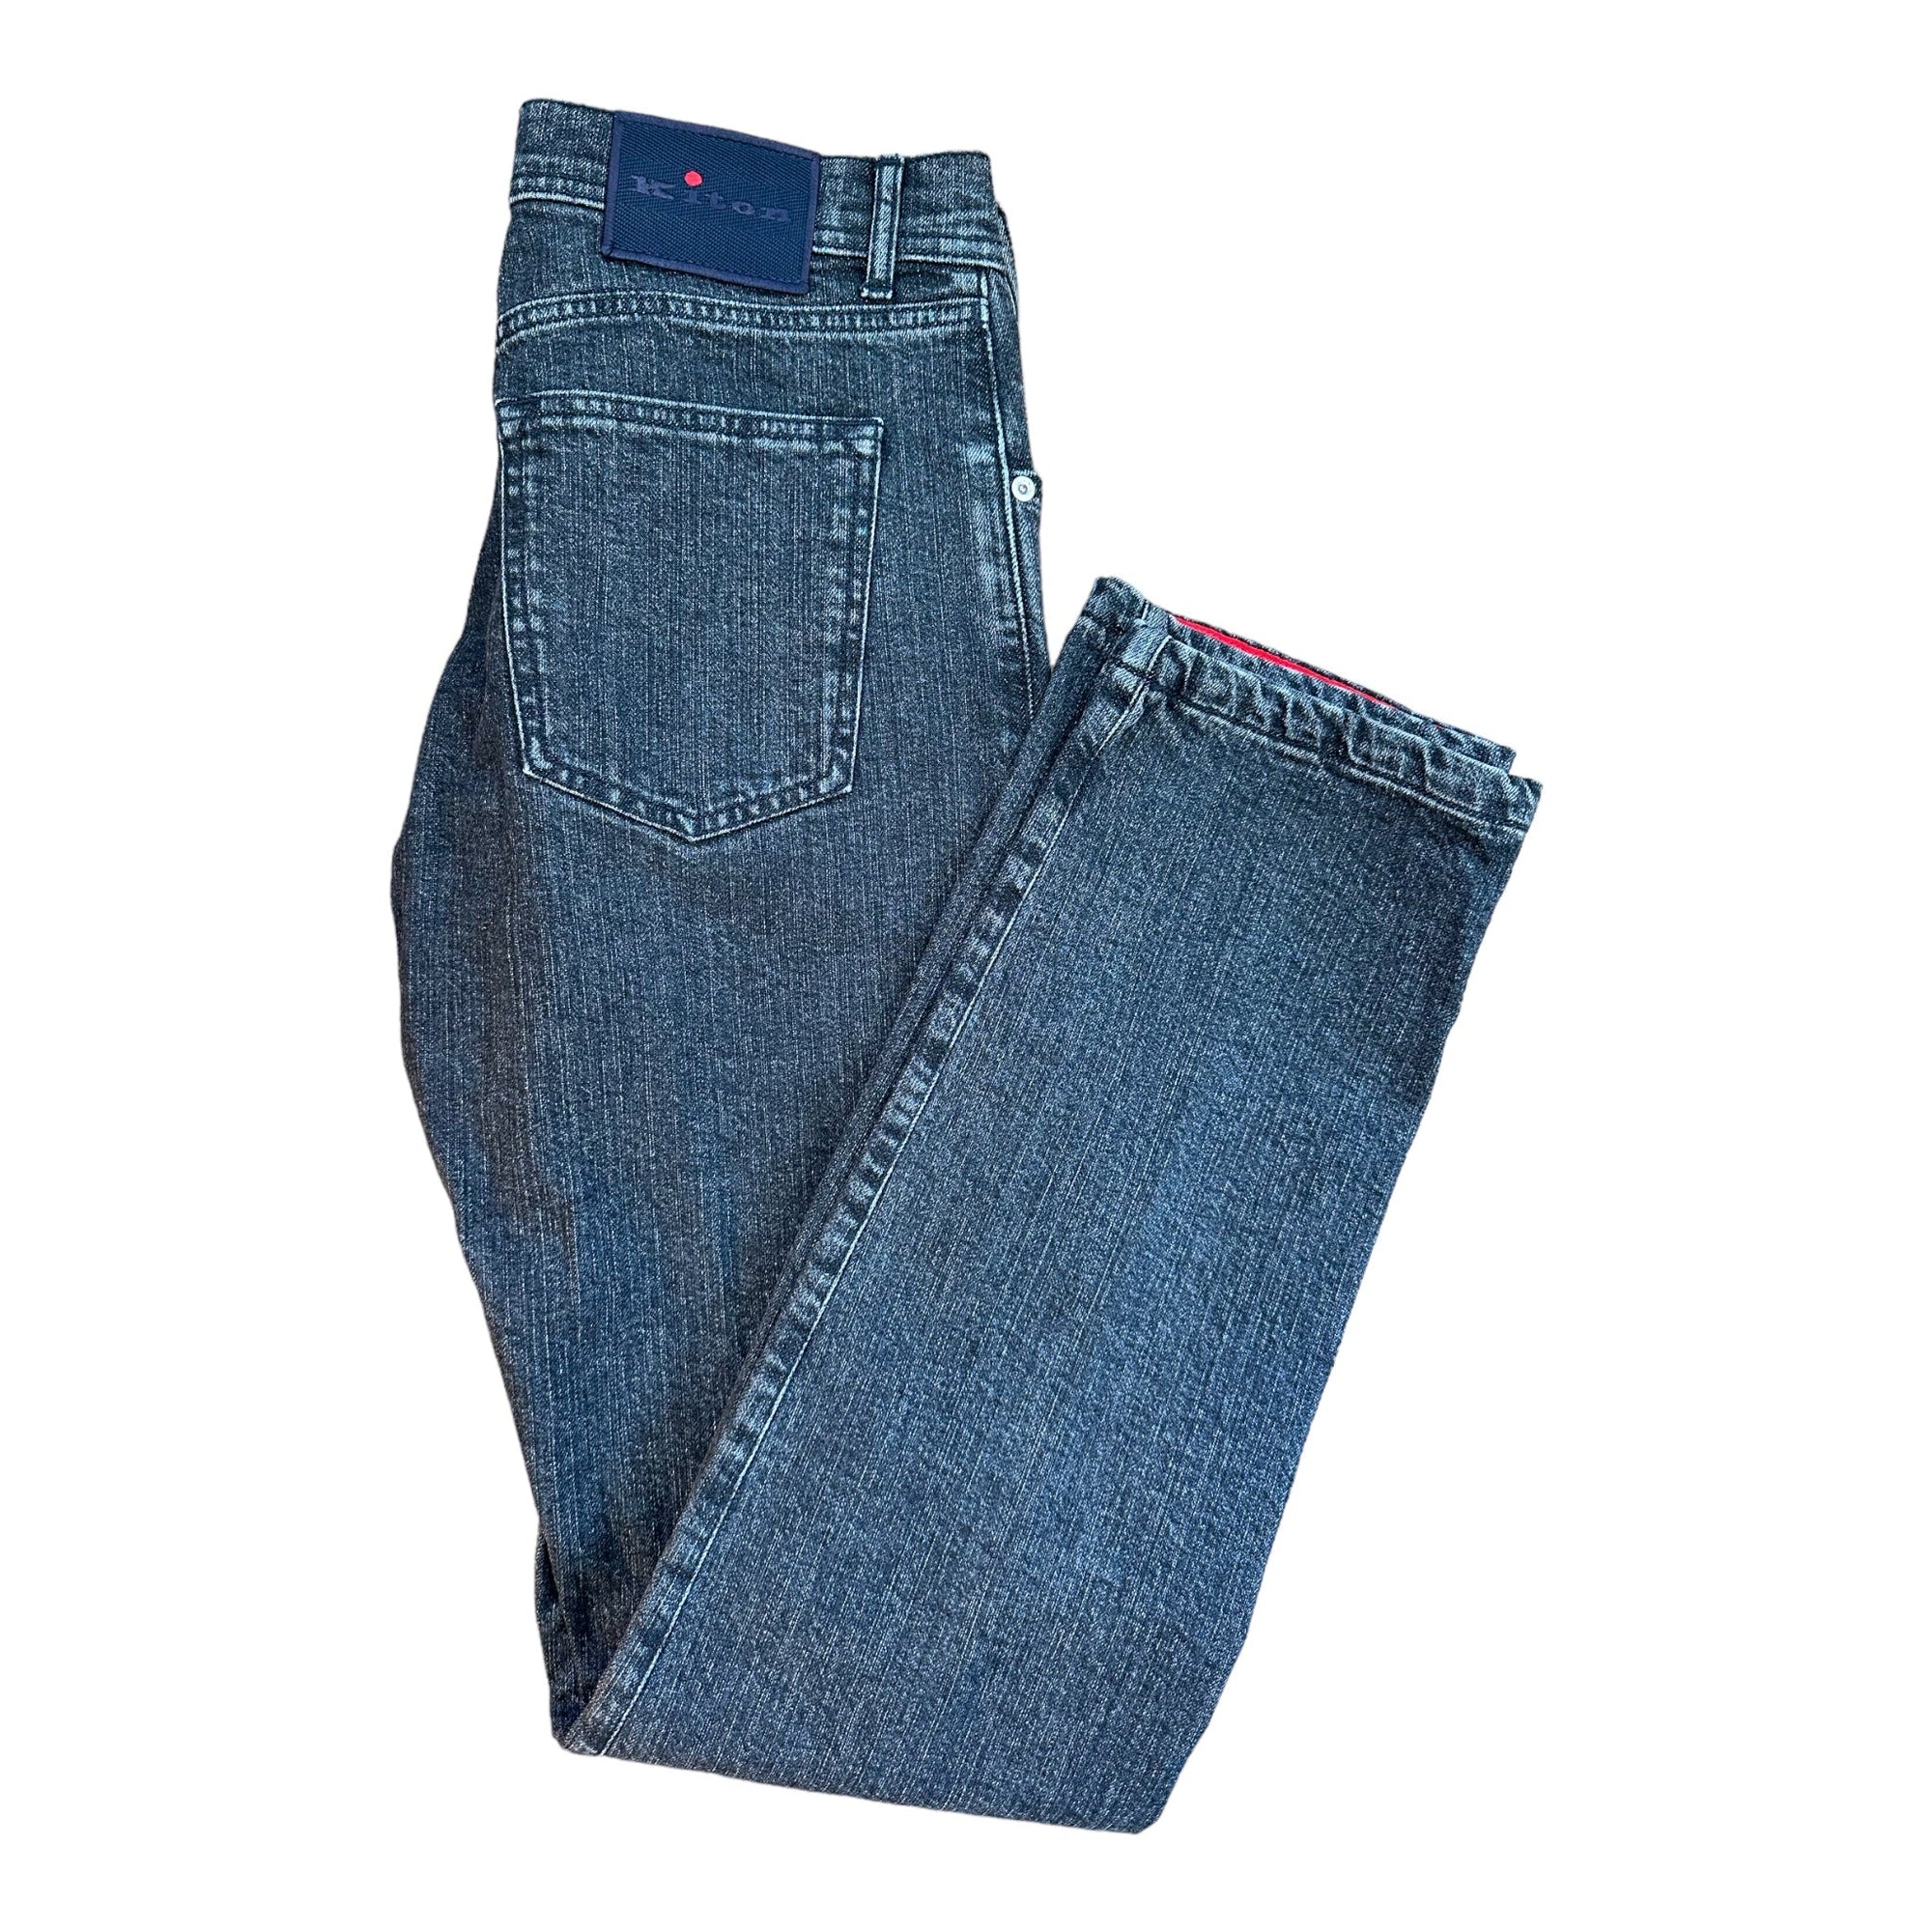 Kiton Jeans schwarz - 24/7 Clothing